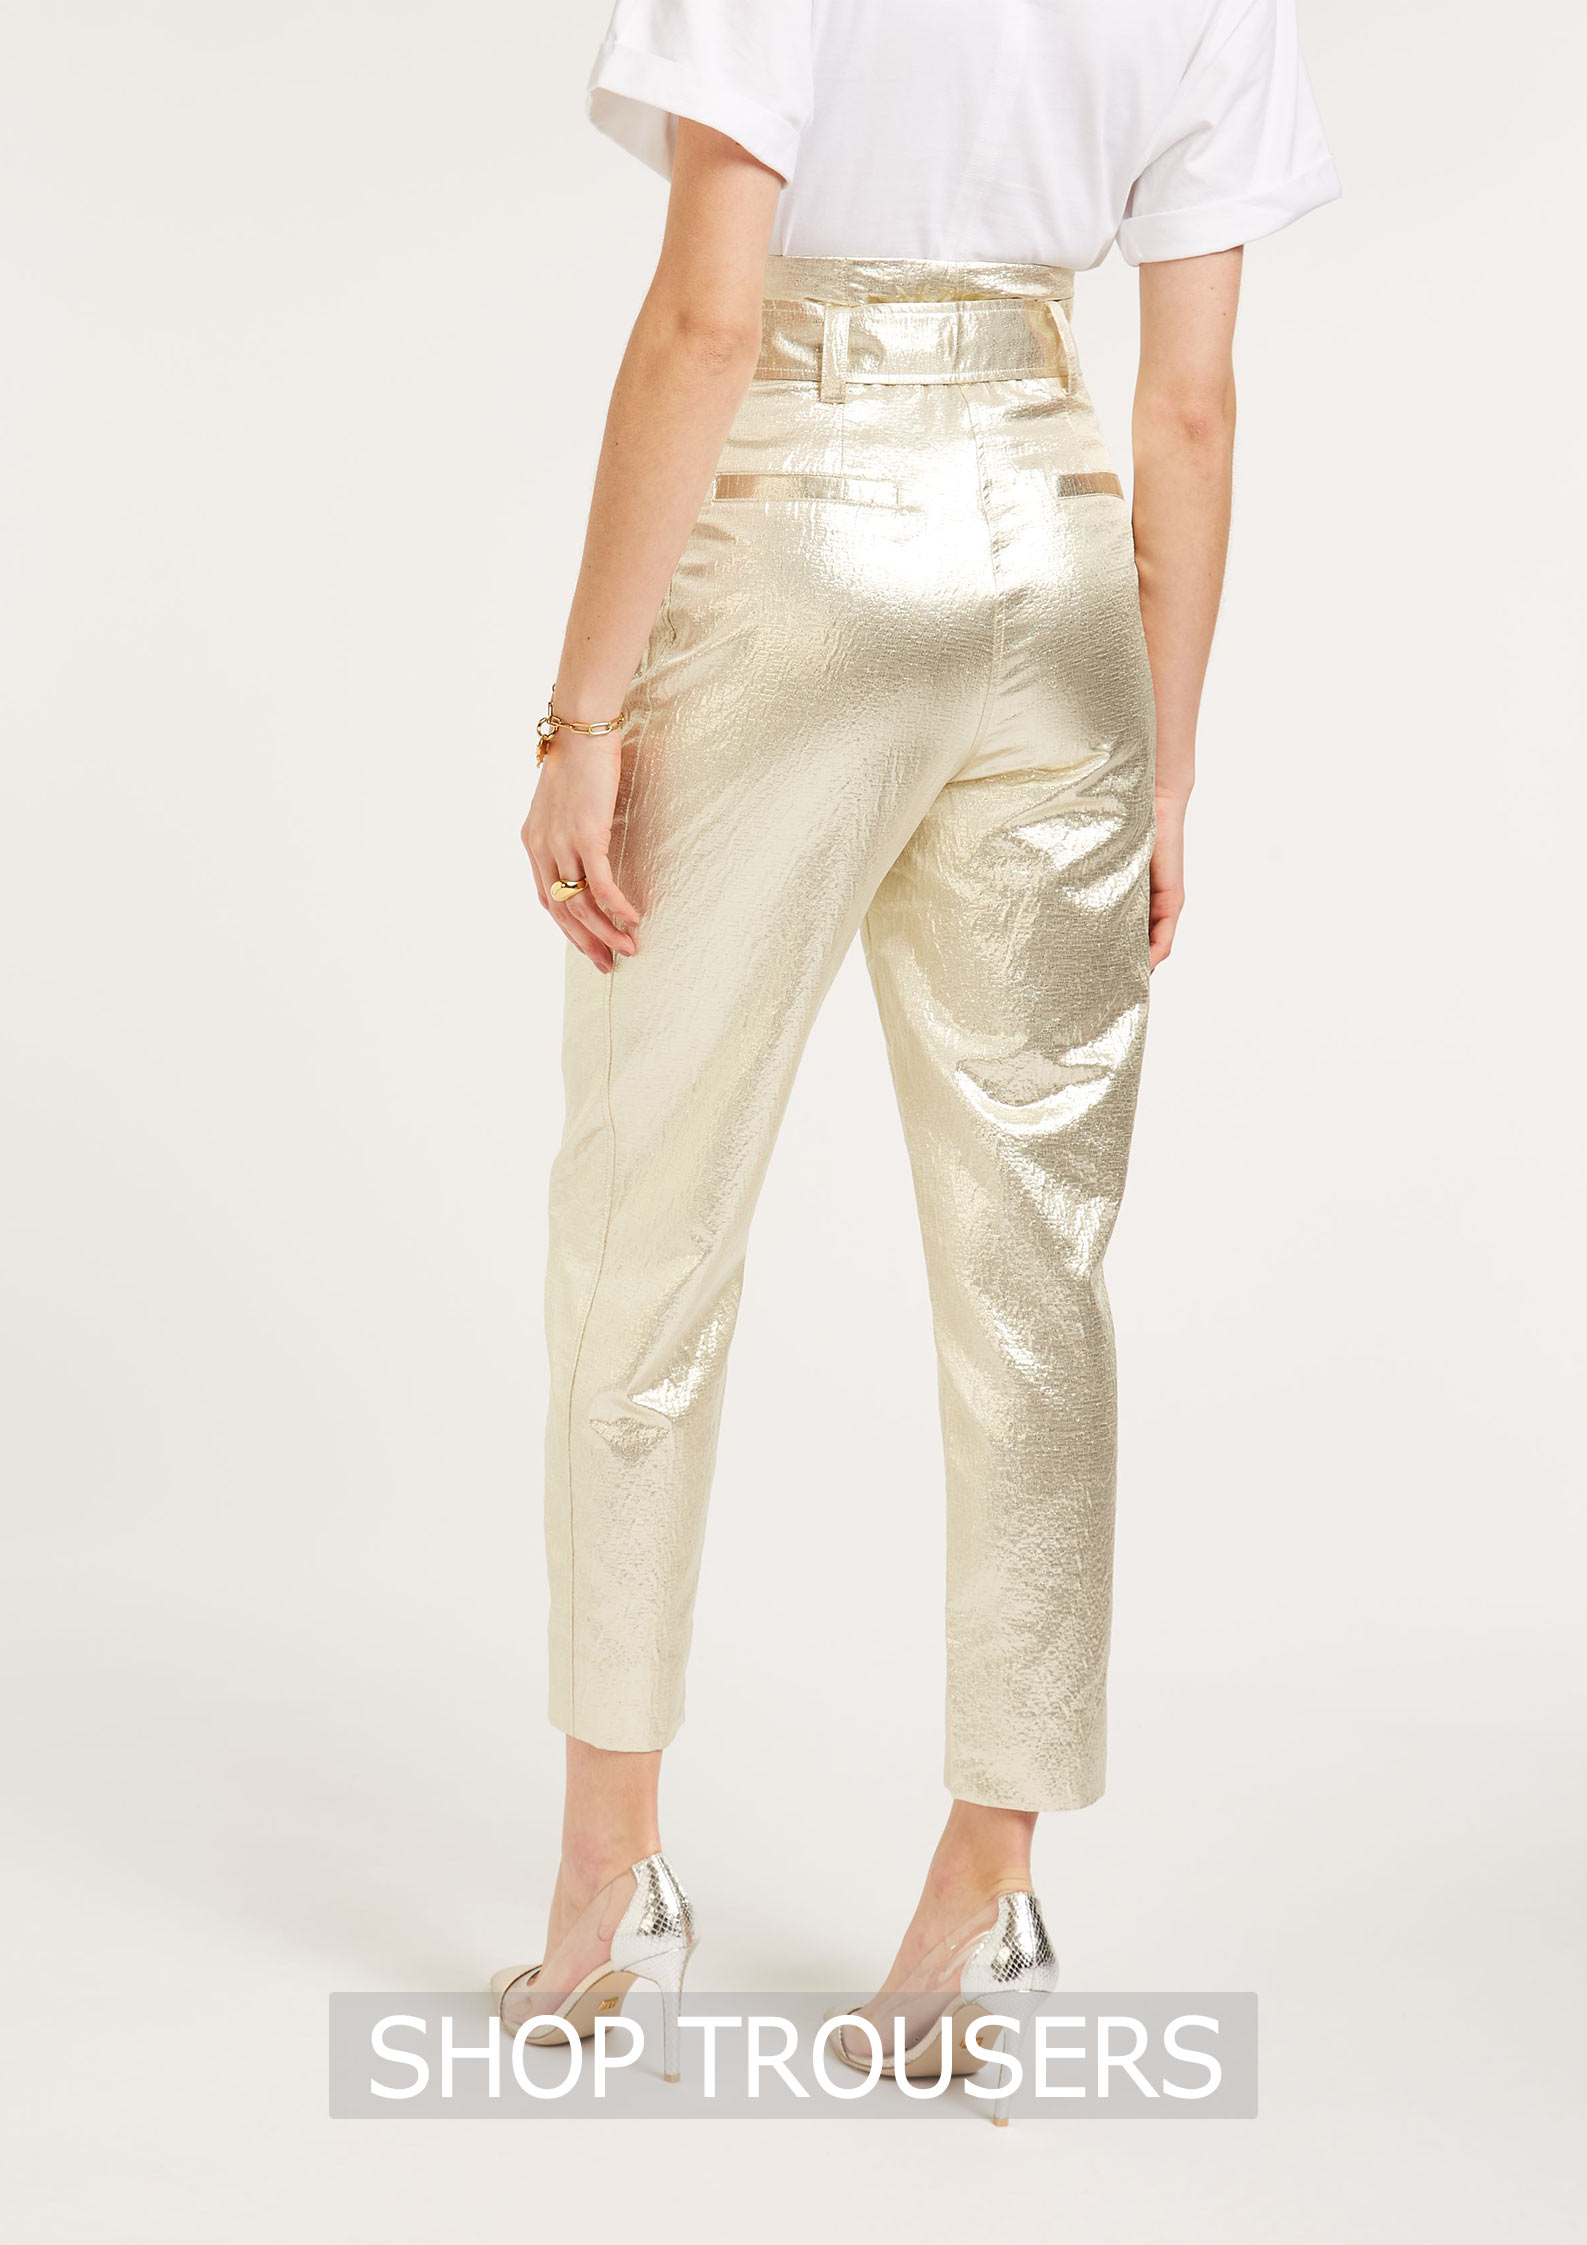 Shop Trousers bij Blush Mode online en in een van onze winkels